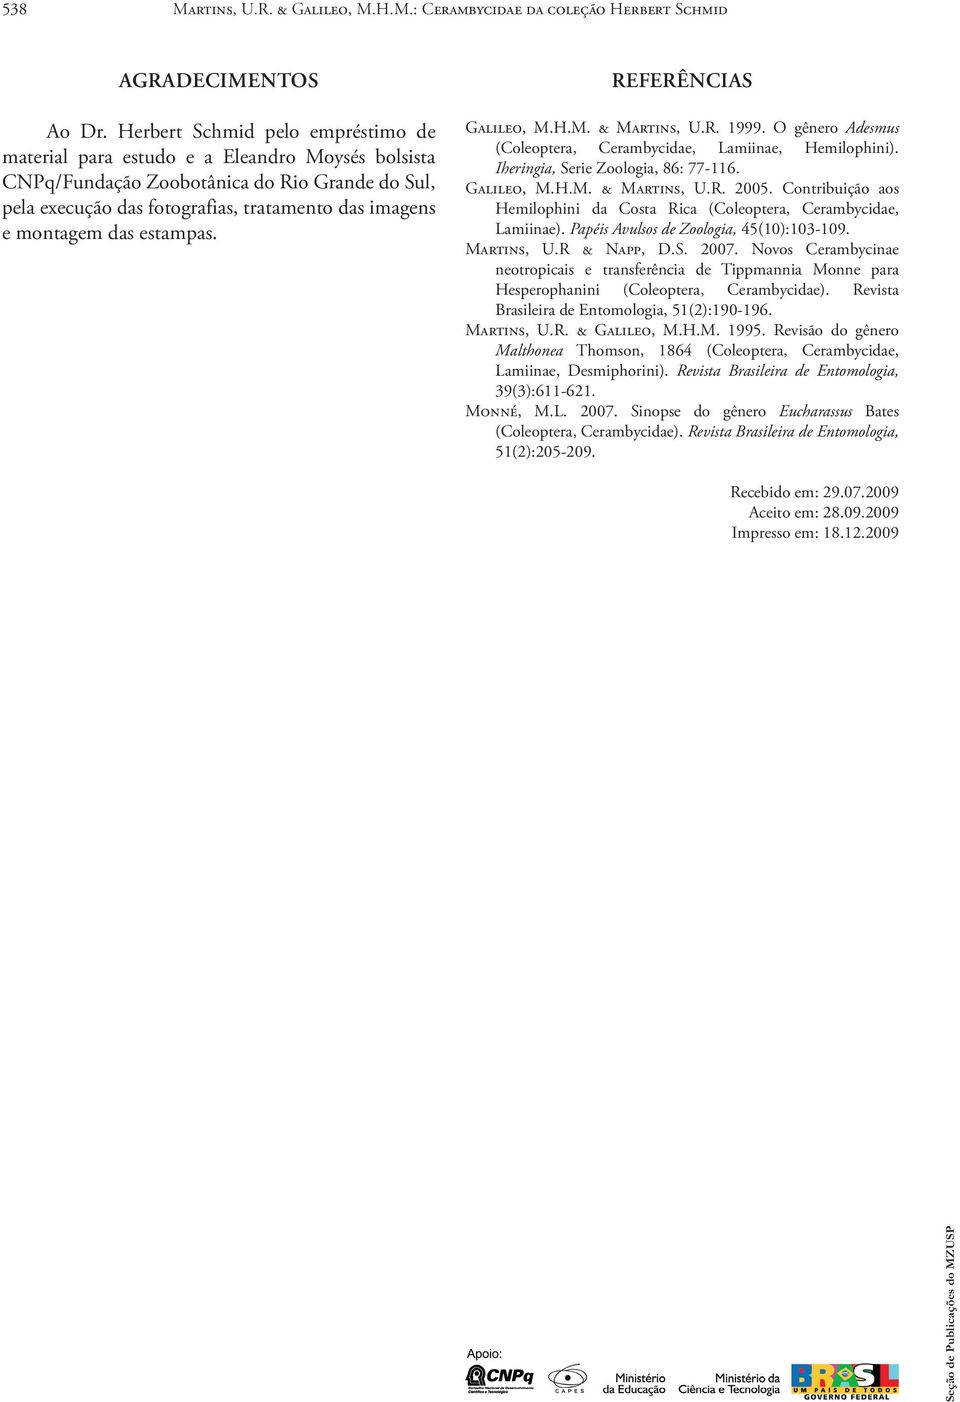 das estampas. Referências Galileo, M.H.M. & Martins, U.R. 1999. O gênero Adesmus (Coleoptera, Cerambycidae, Lamiinae, Hemilophini). Iheringia, Serie Zoologia, 86: 77 116. Galileo, M.H.M. & Martins, U.R. 2005.